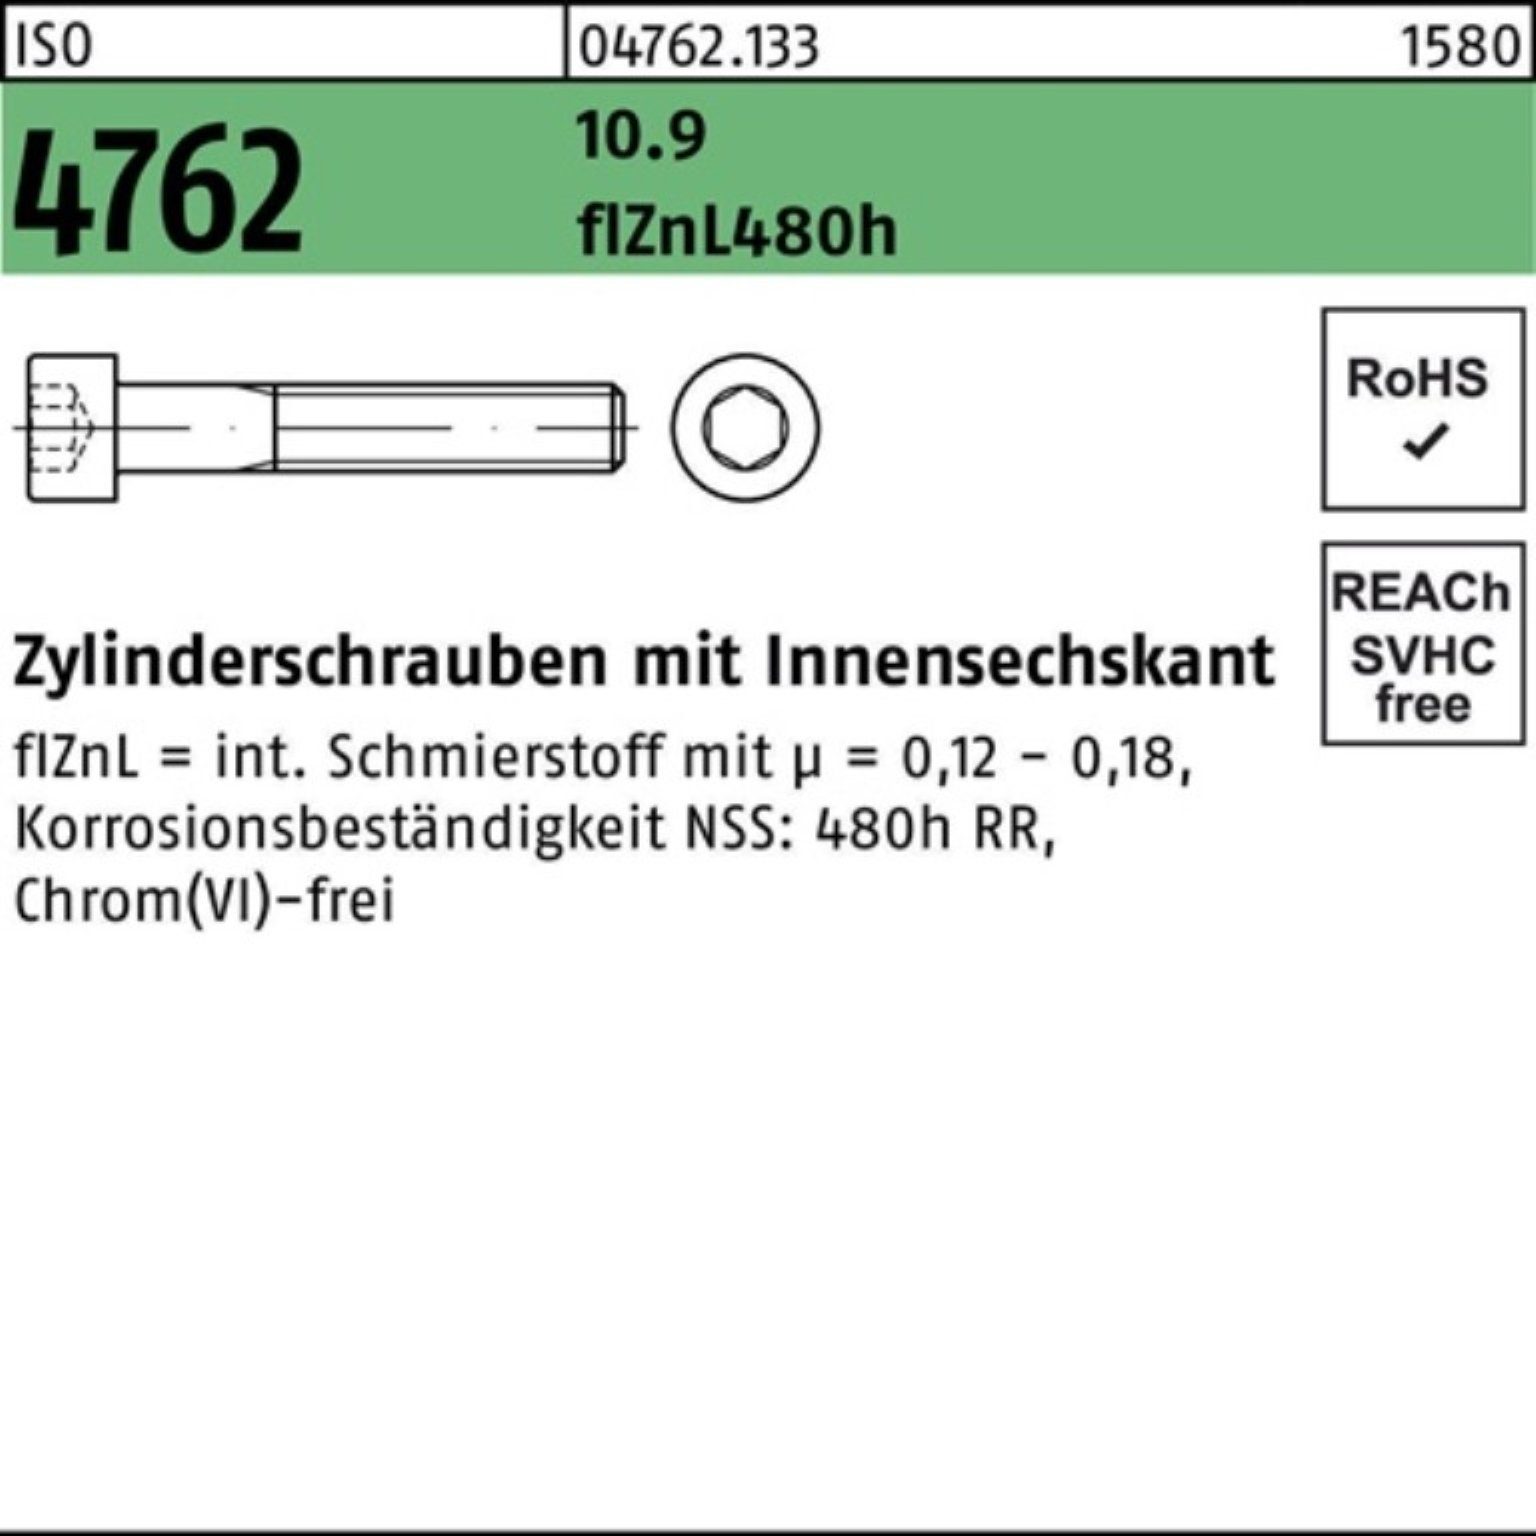 ISO Zylinderschraube Innen-6kt zinklamelle Zylinderschraube Pack 4762 Reyher M10x75 10.9 100er